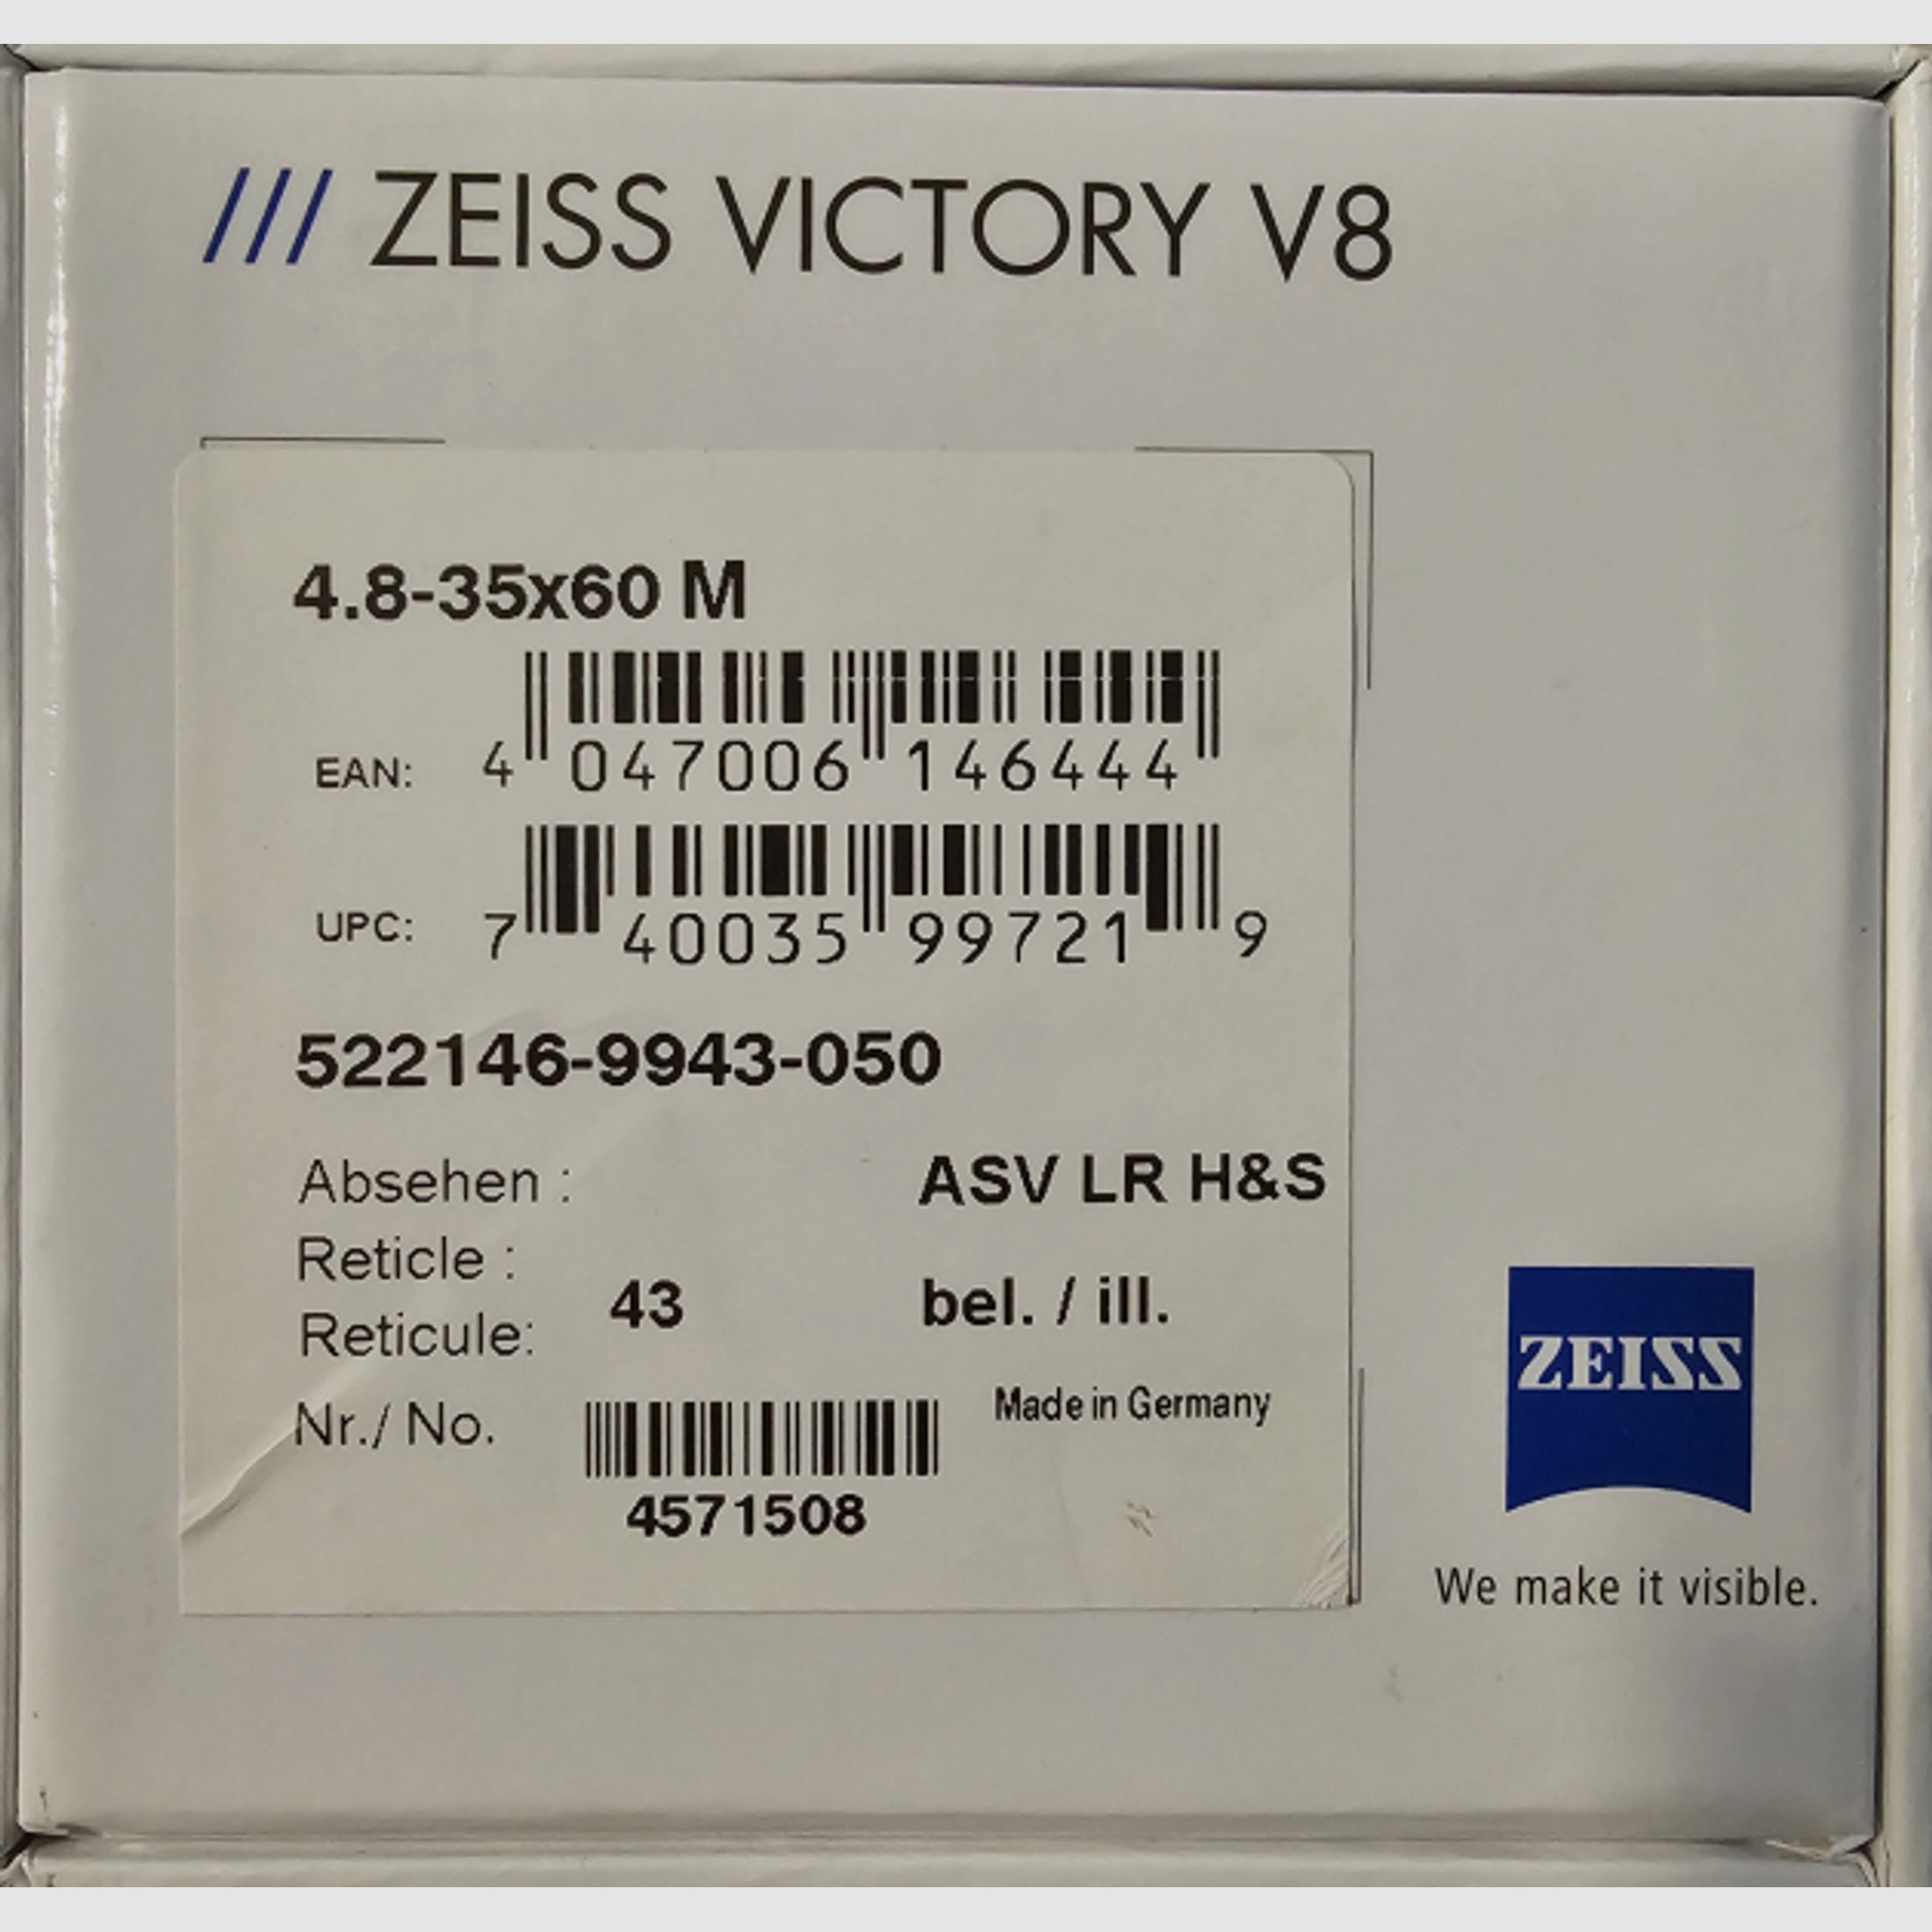 Zeiss Victory V8 4,8-35x60 M ASV LR H&S Abs. 43, InfiRay CH50 V2, INNOMOUNT Tikka, Adapter